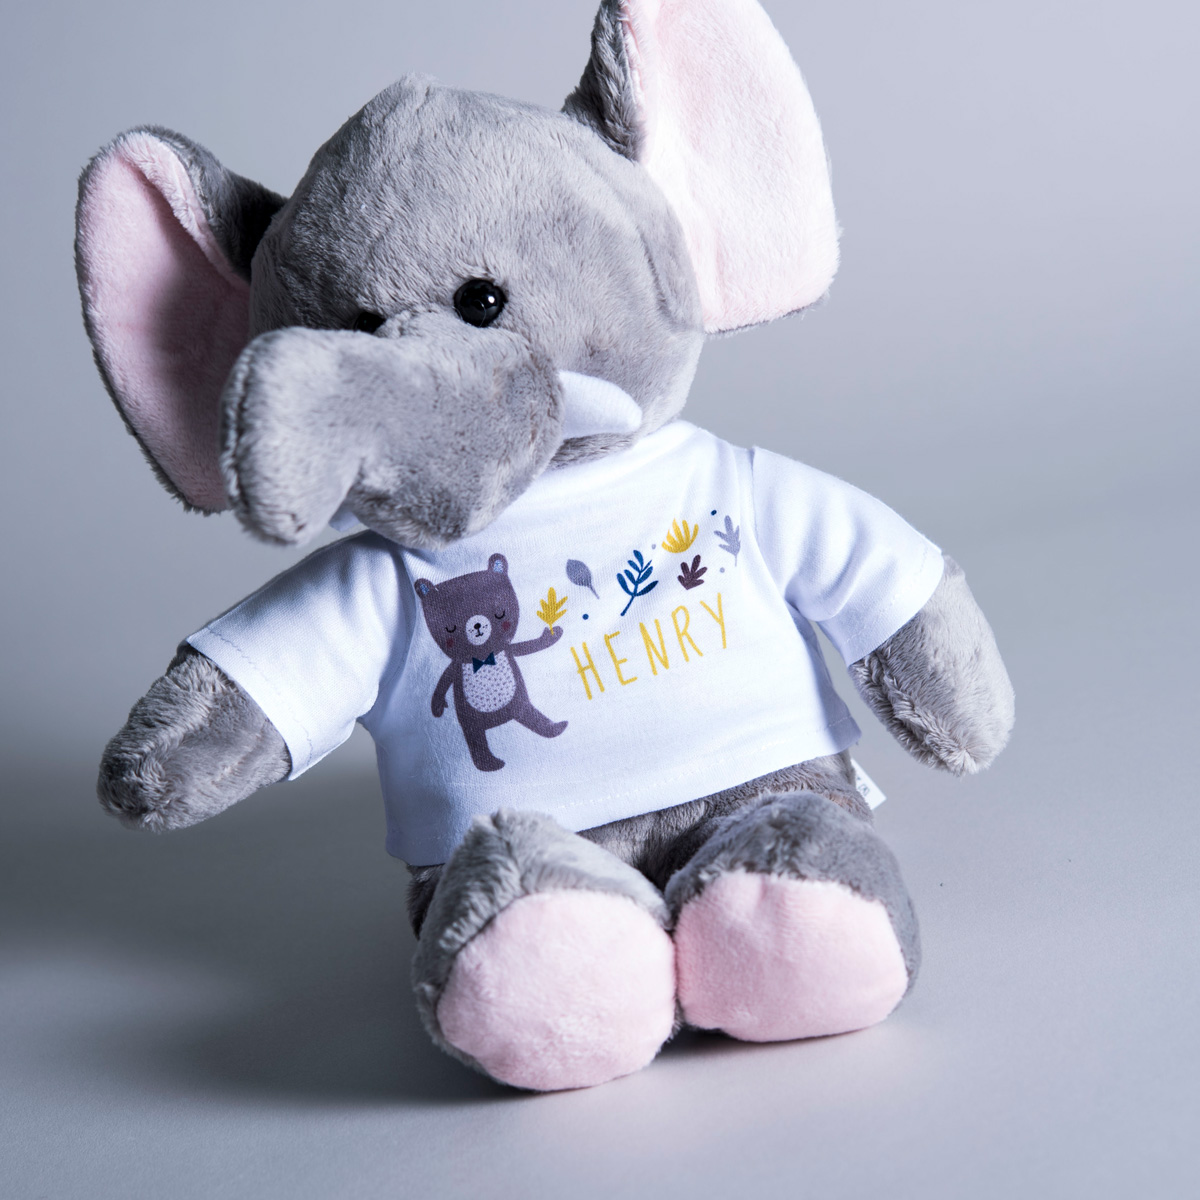 Personalised Elephant Plush Toy - Bear